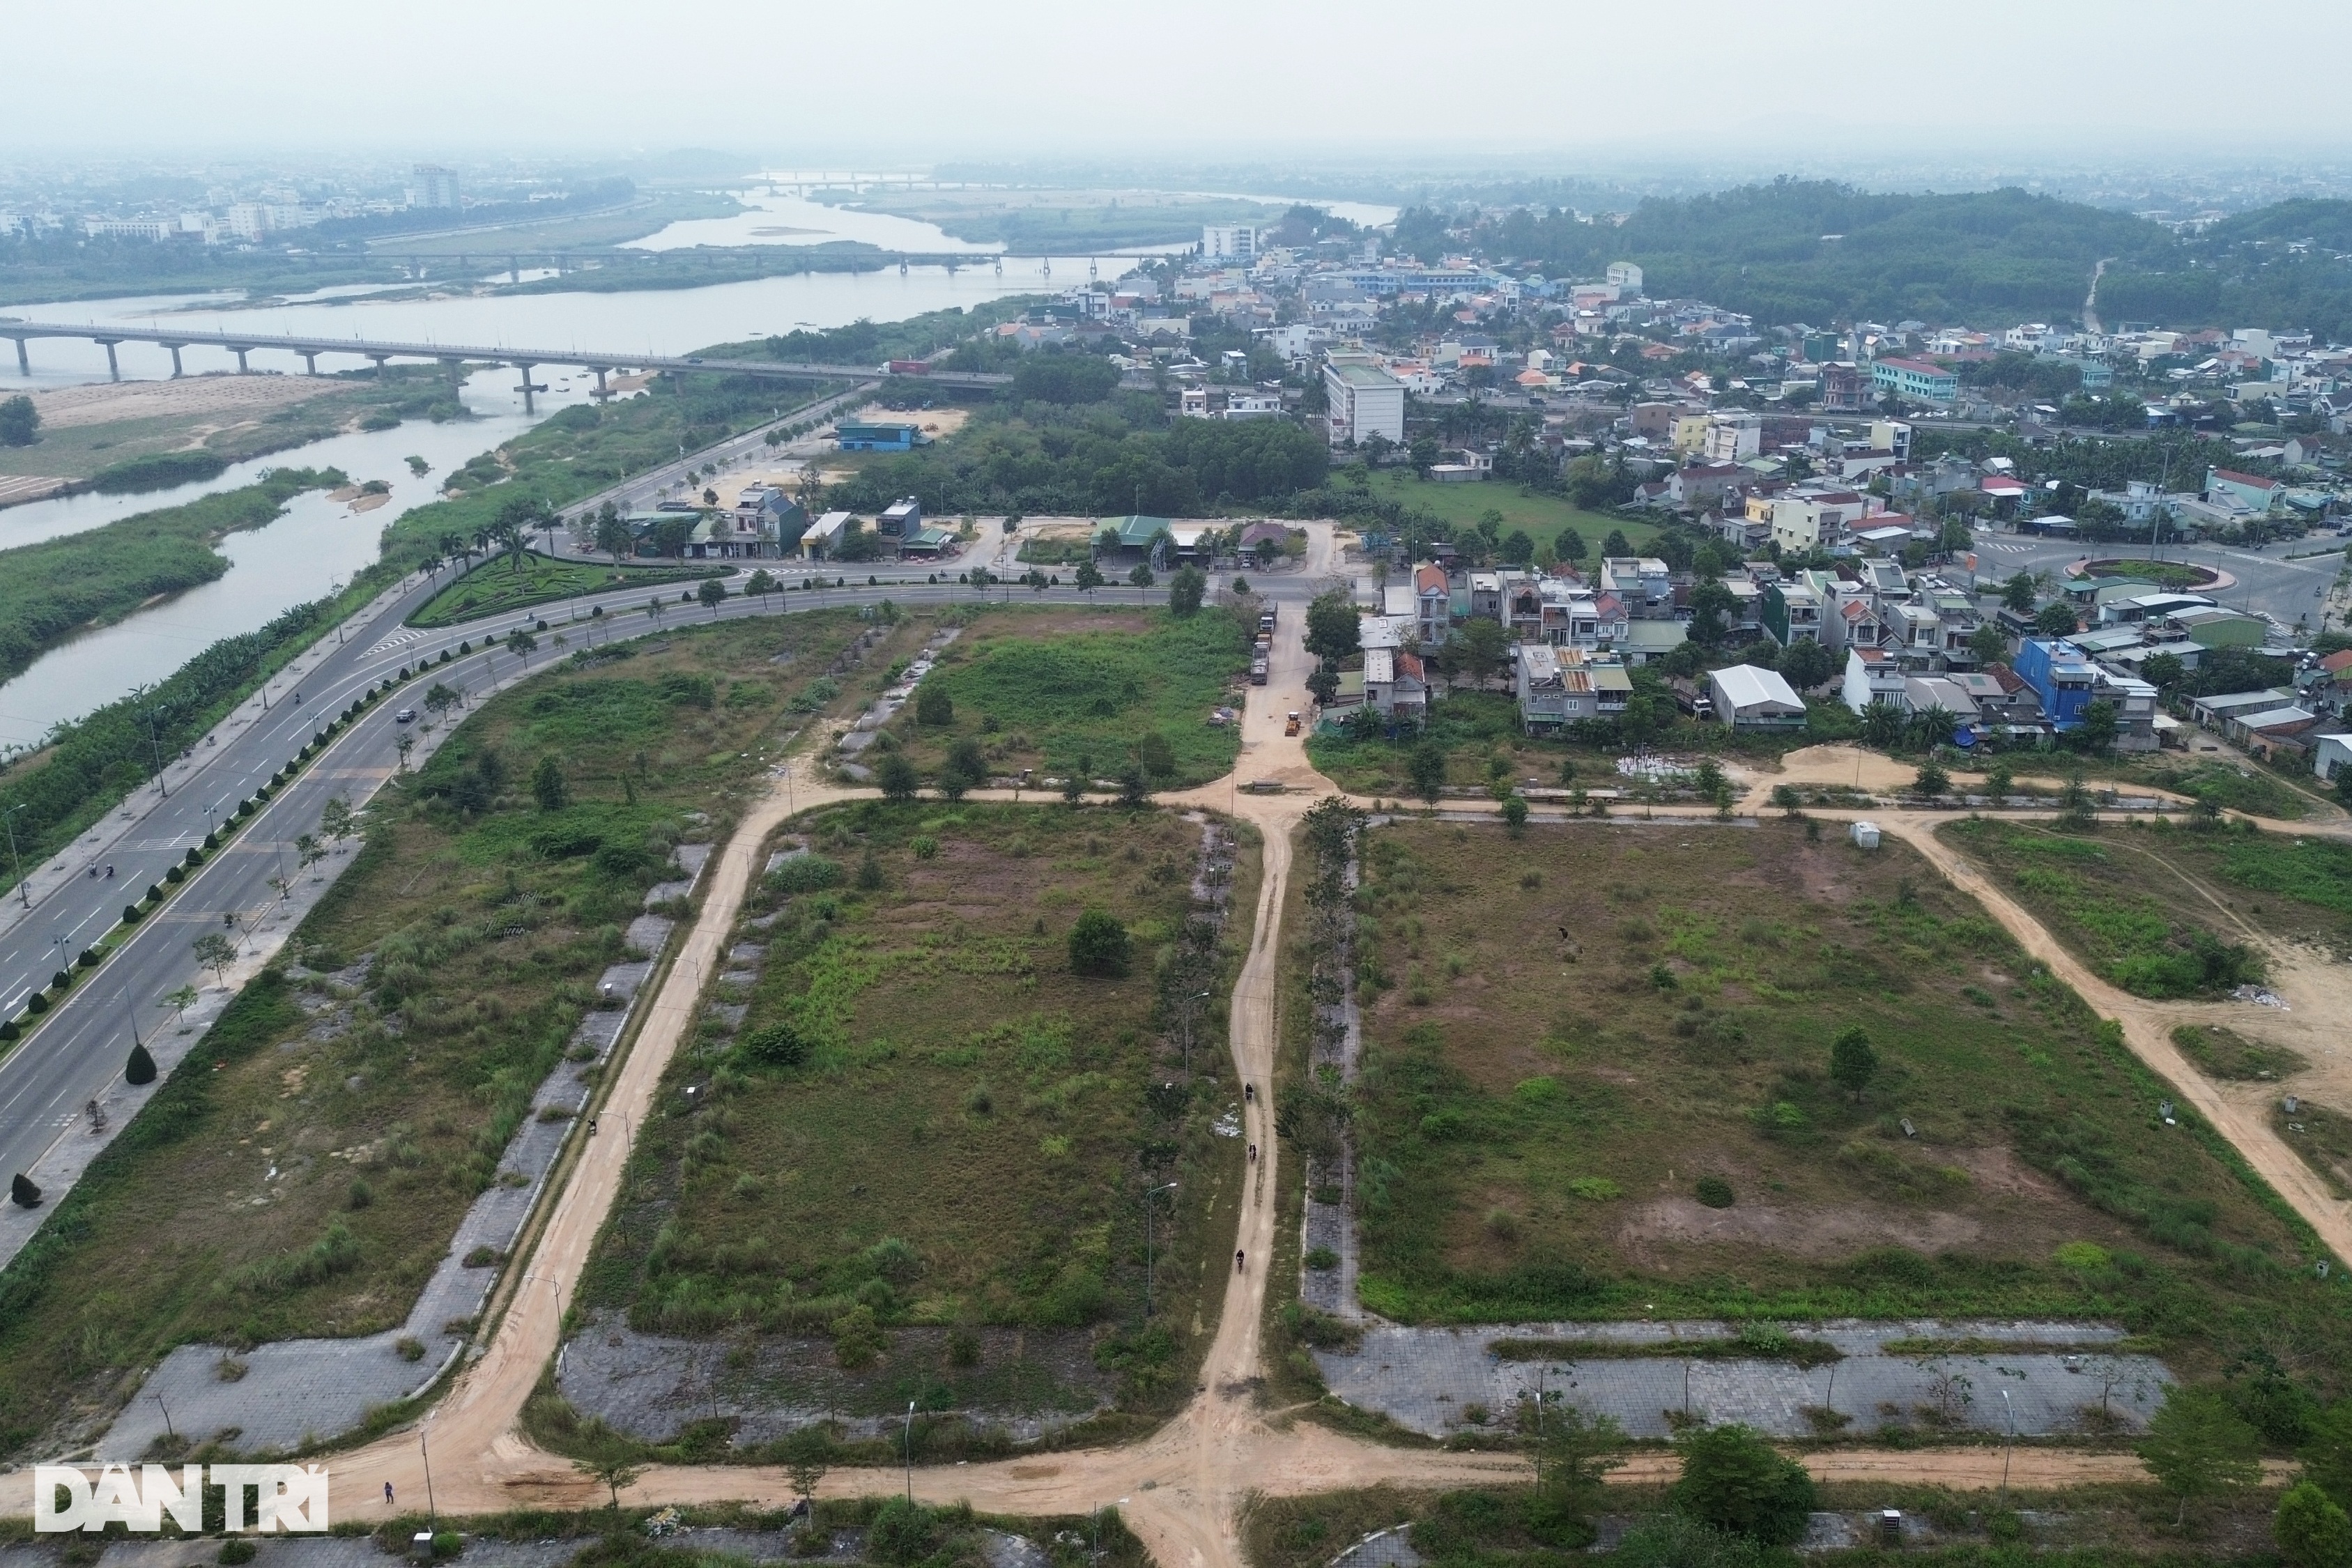 View - Khu dân cư 400 tỷ đồng trên "đất vàng" Quảng Ngãi bị bỏ hoang | Báo Dân trí